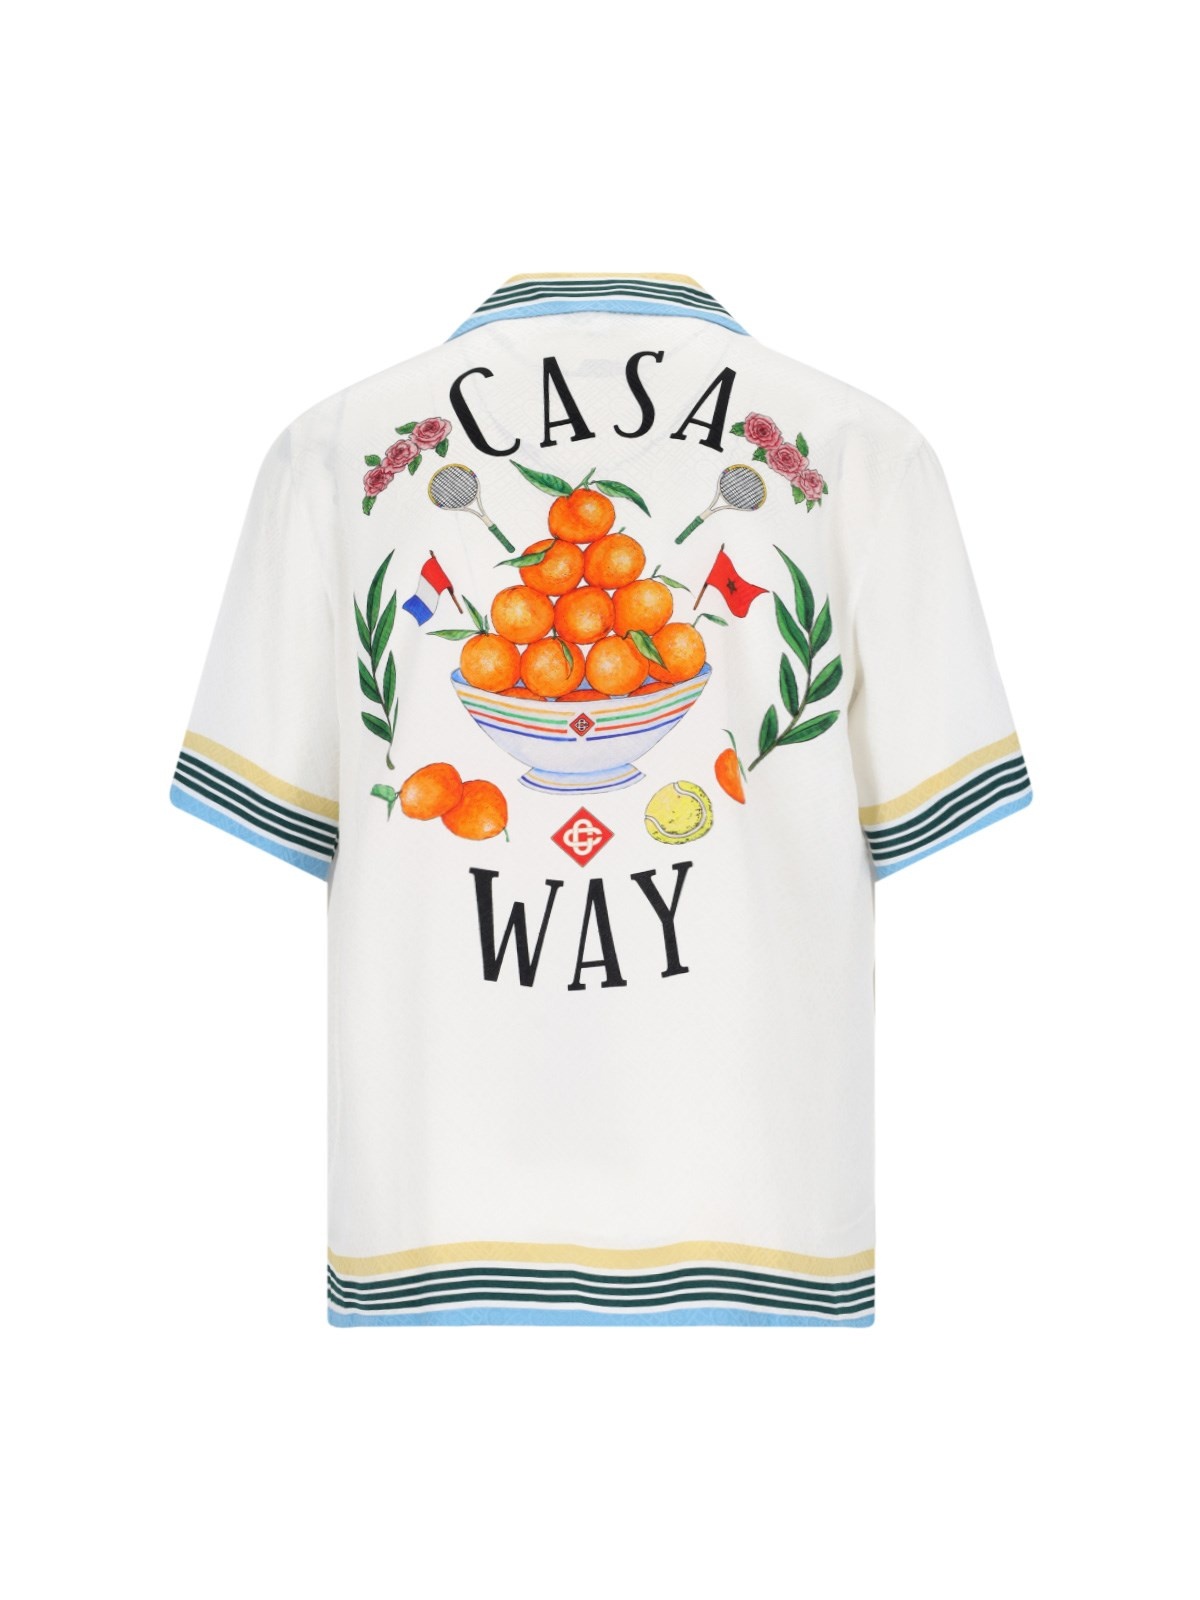 'CASA WAY' SHIRT - 2